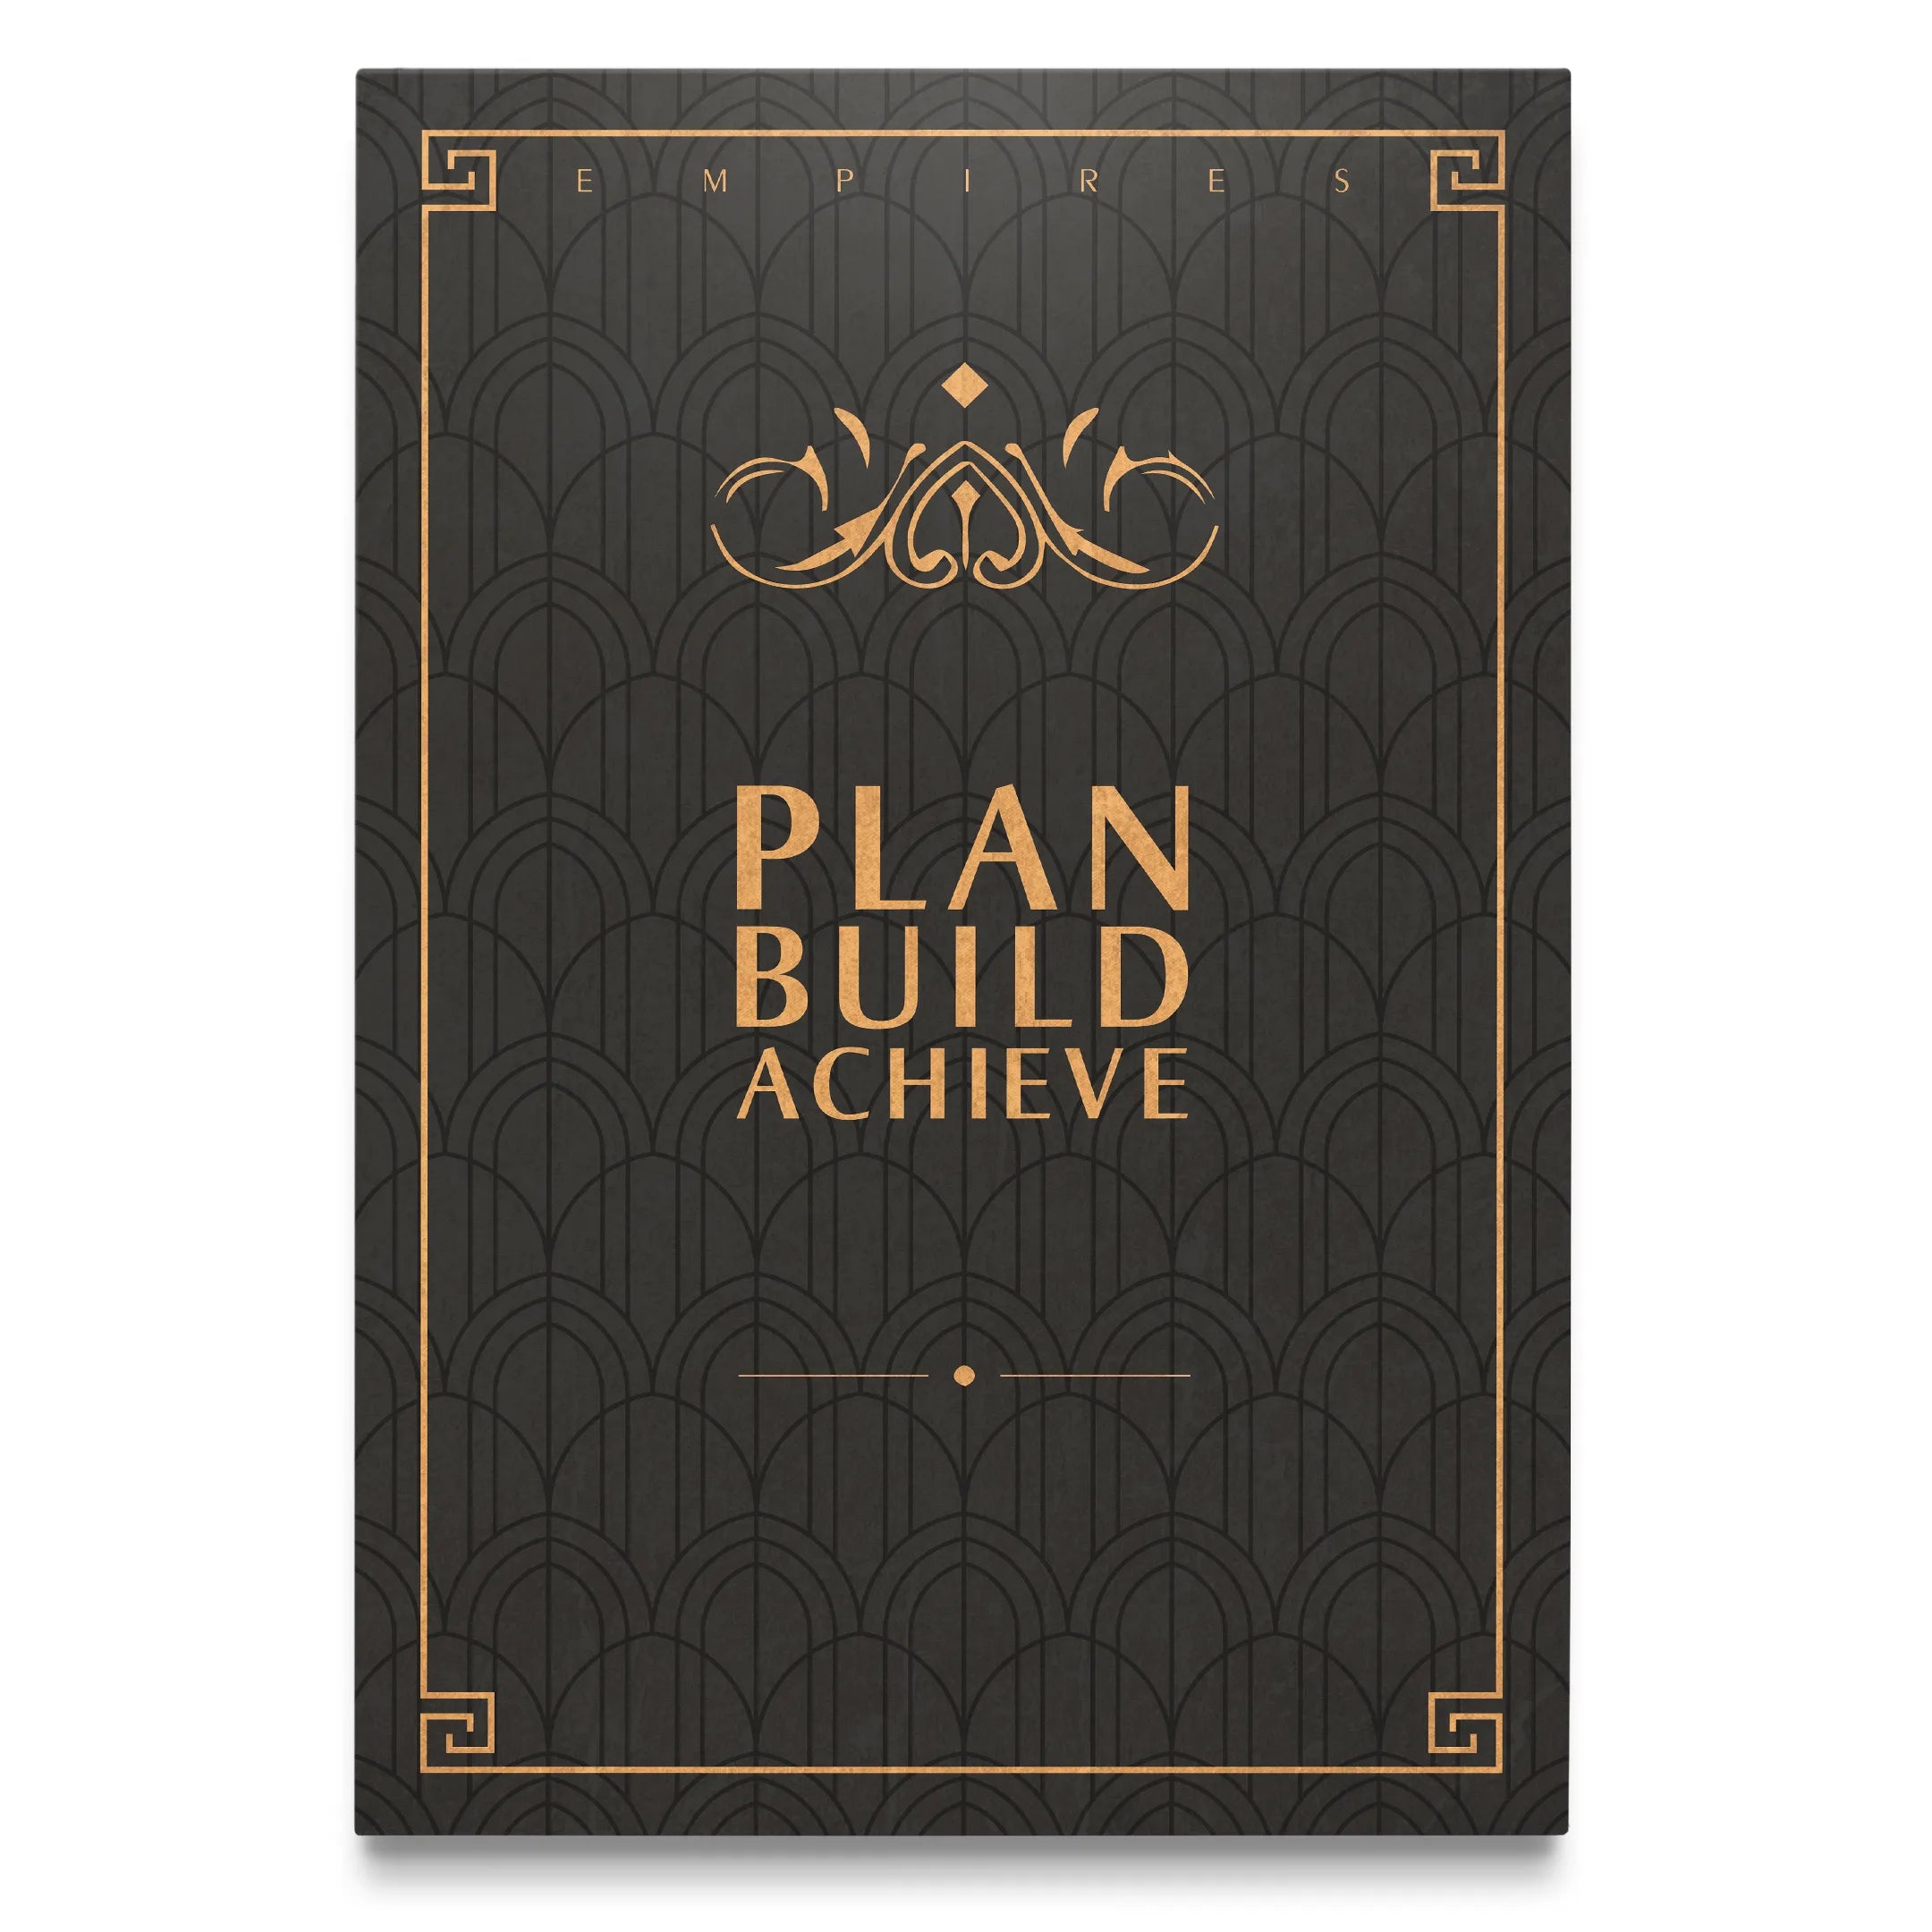 Plan, Build, Achieve.